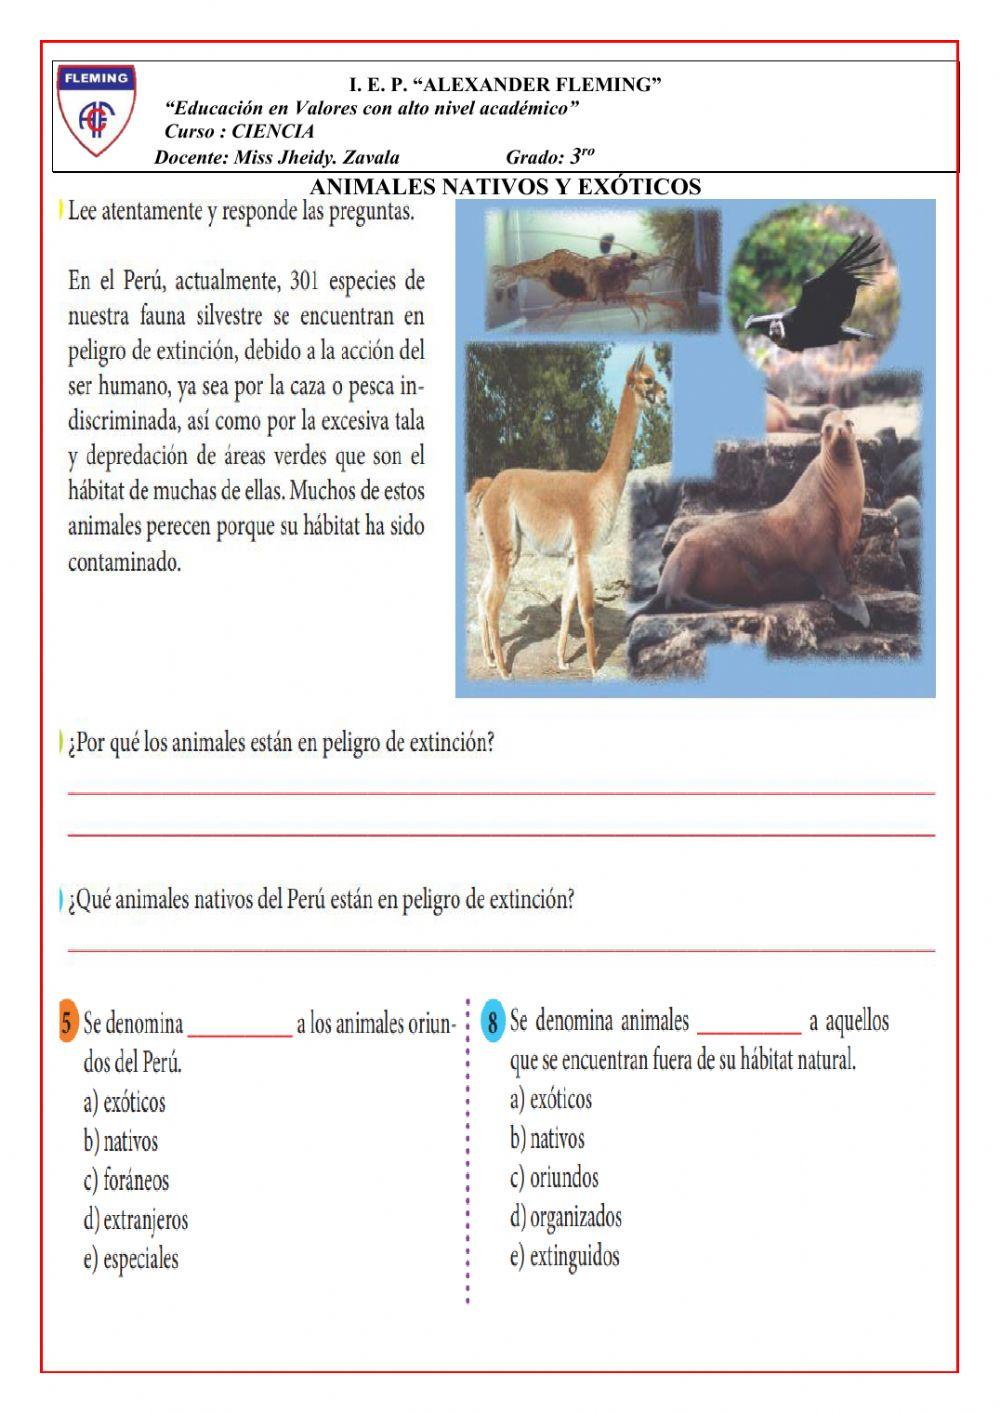 Animales nativos y exoticos